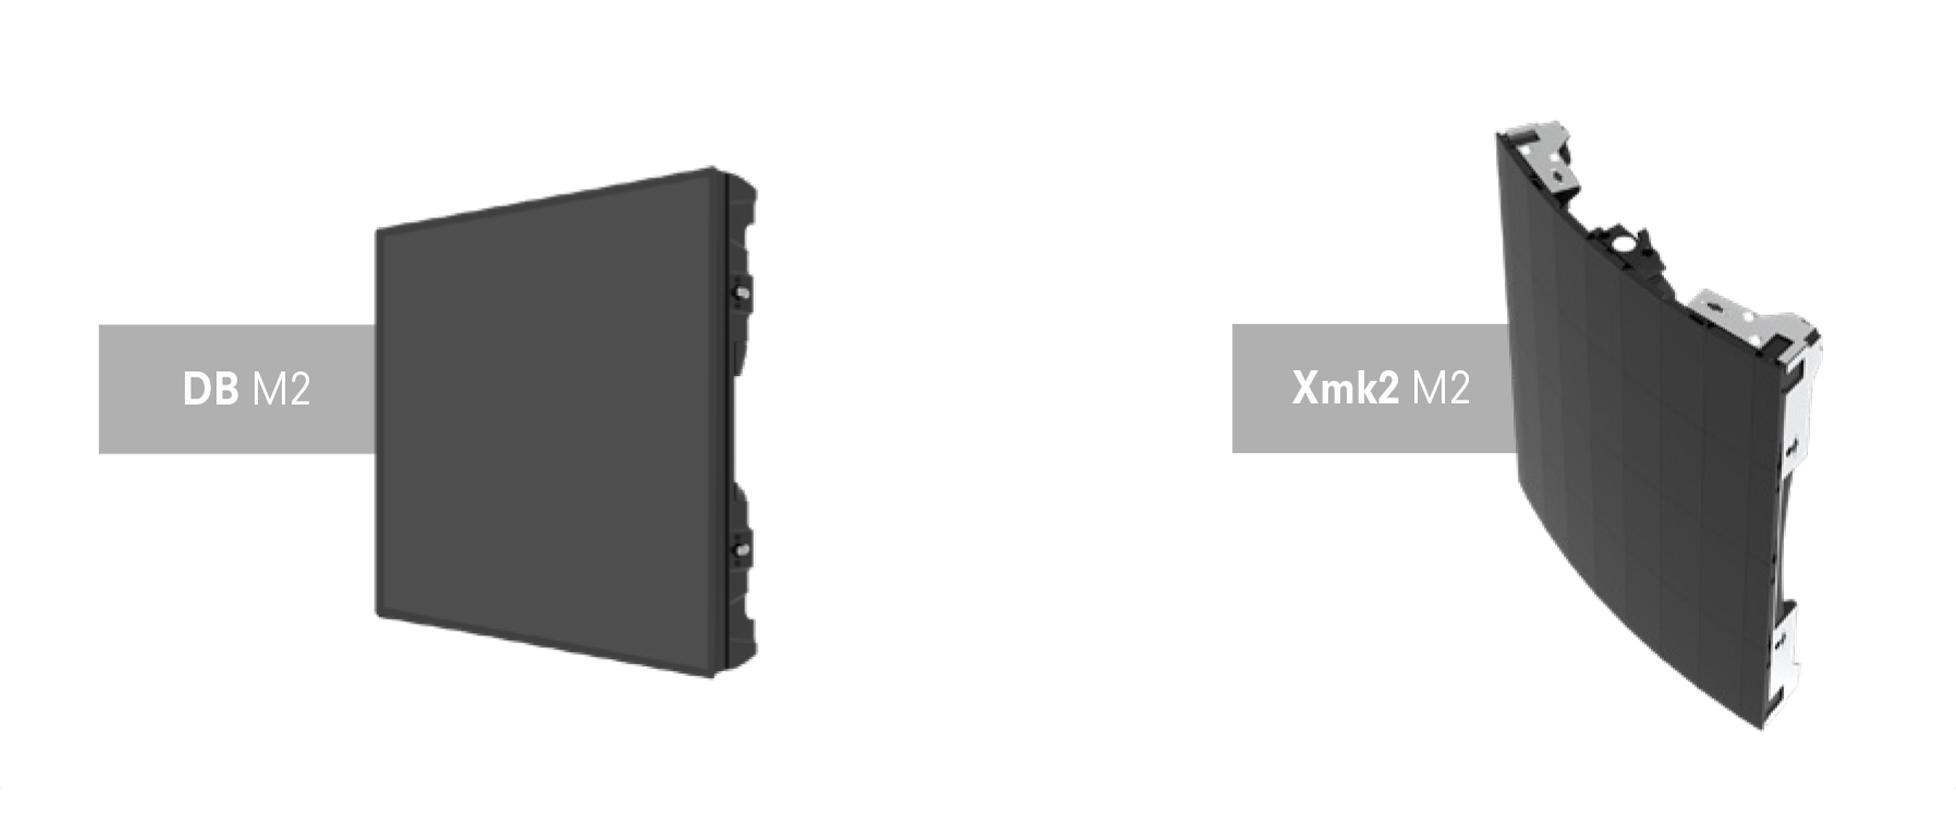 视爵光旭DB M2和Xmk2 M2系列产品图片